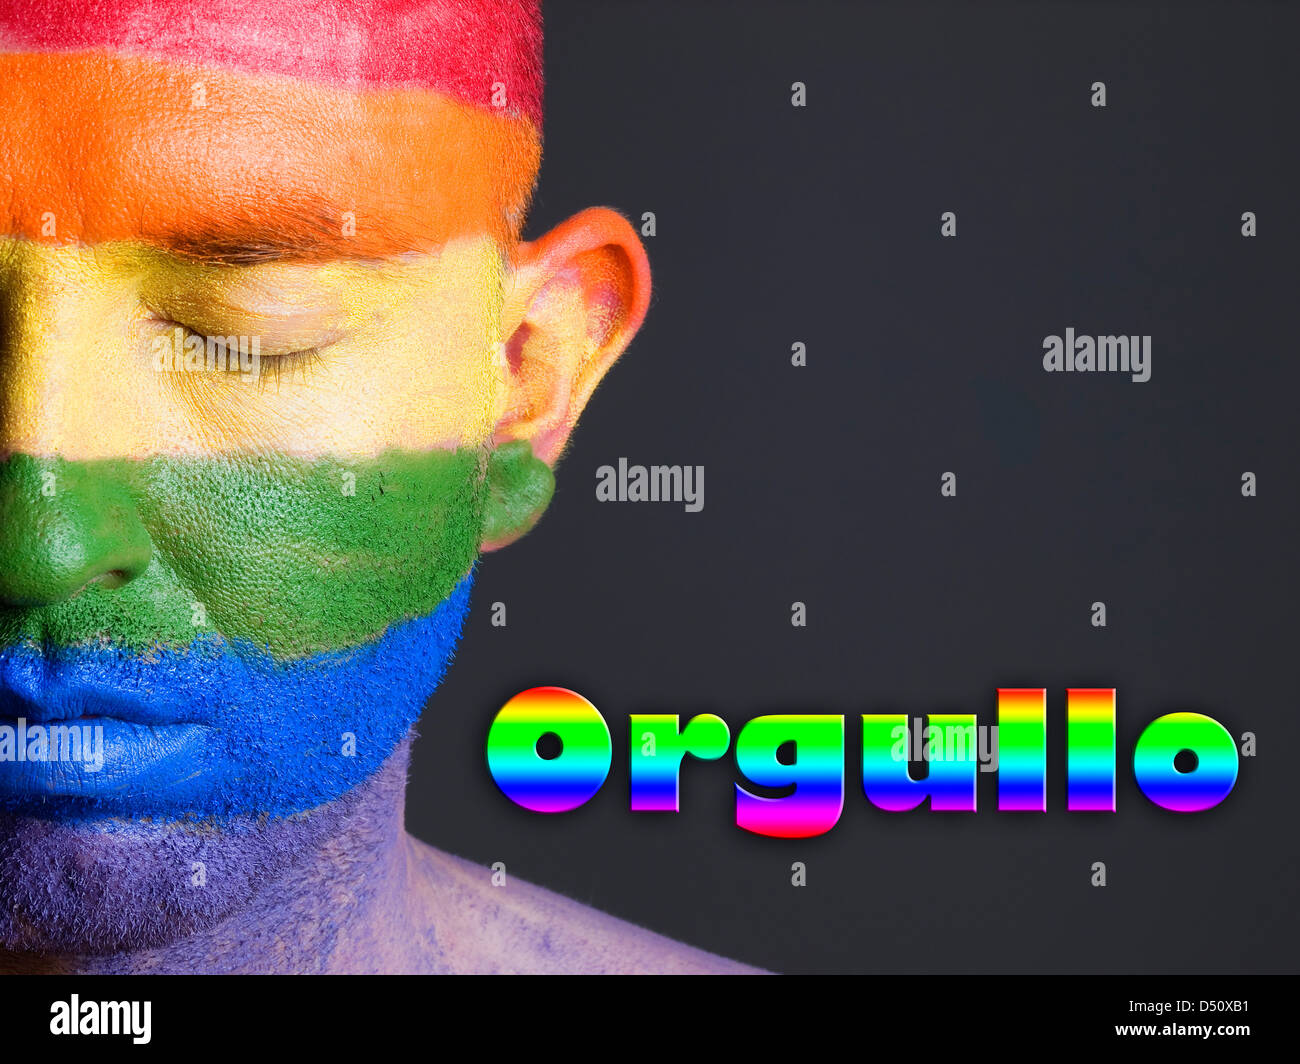 Hombre con la bandera gay pintada en la cara y con los ojos cerrados. La palabra orgullo esta escrita en un lado. Stock Photo